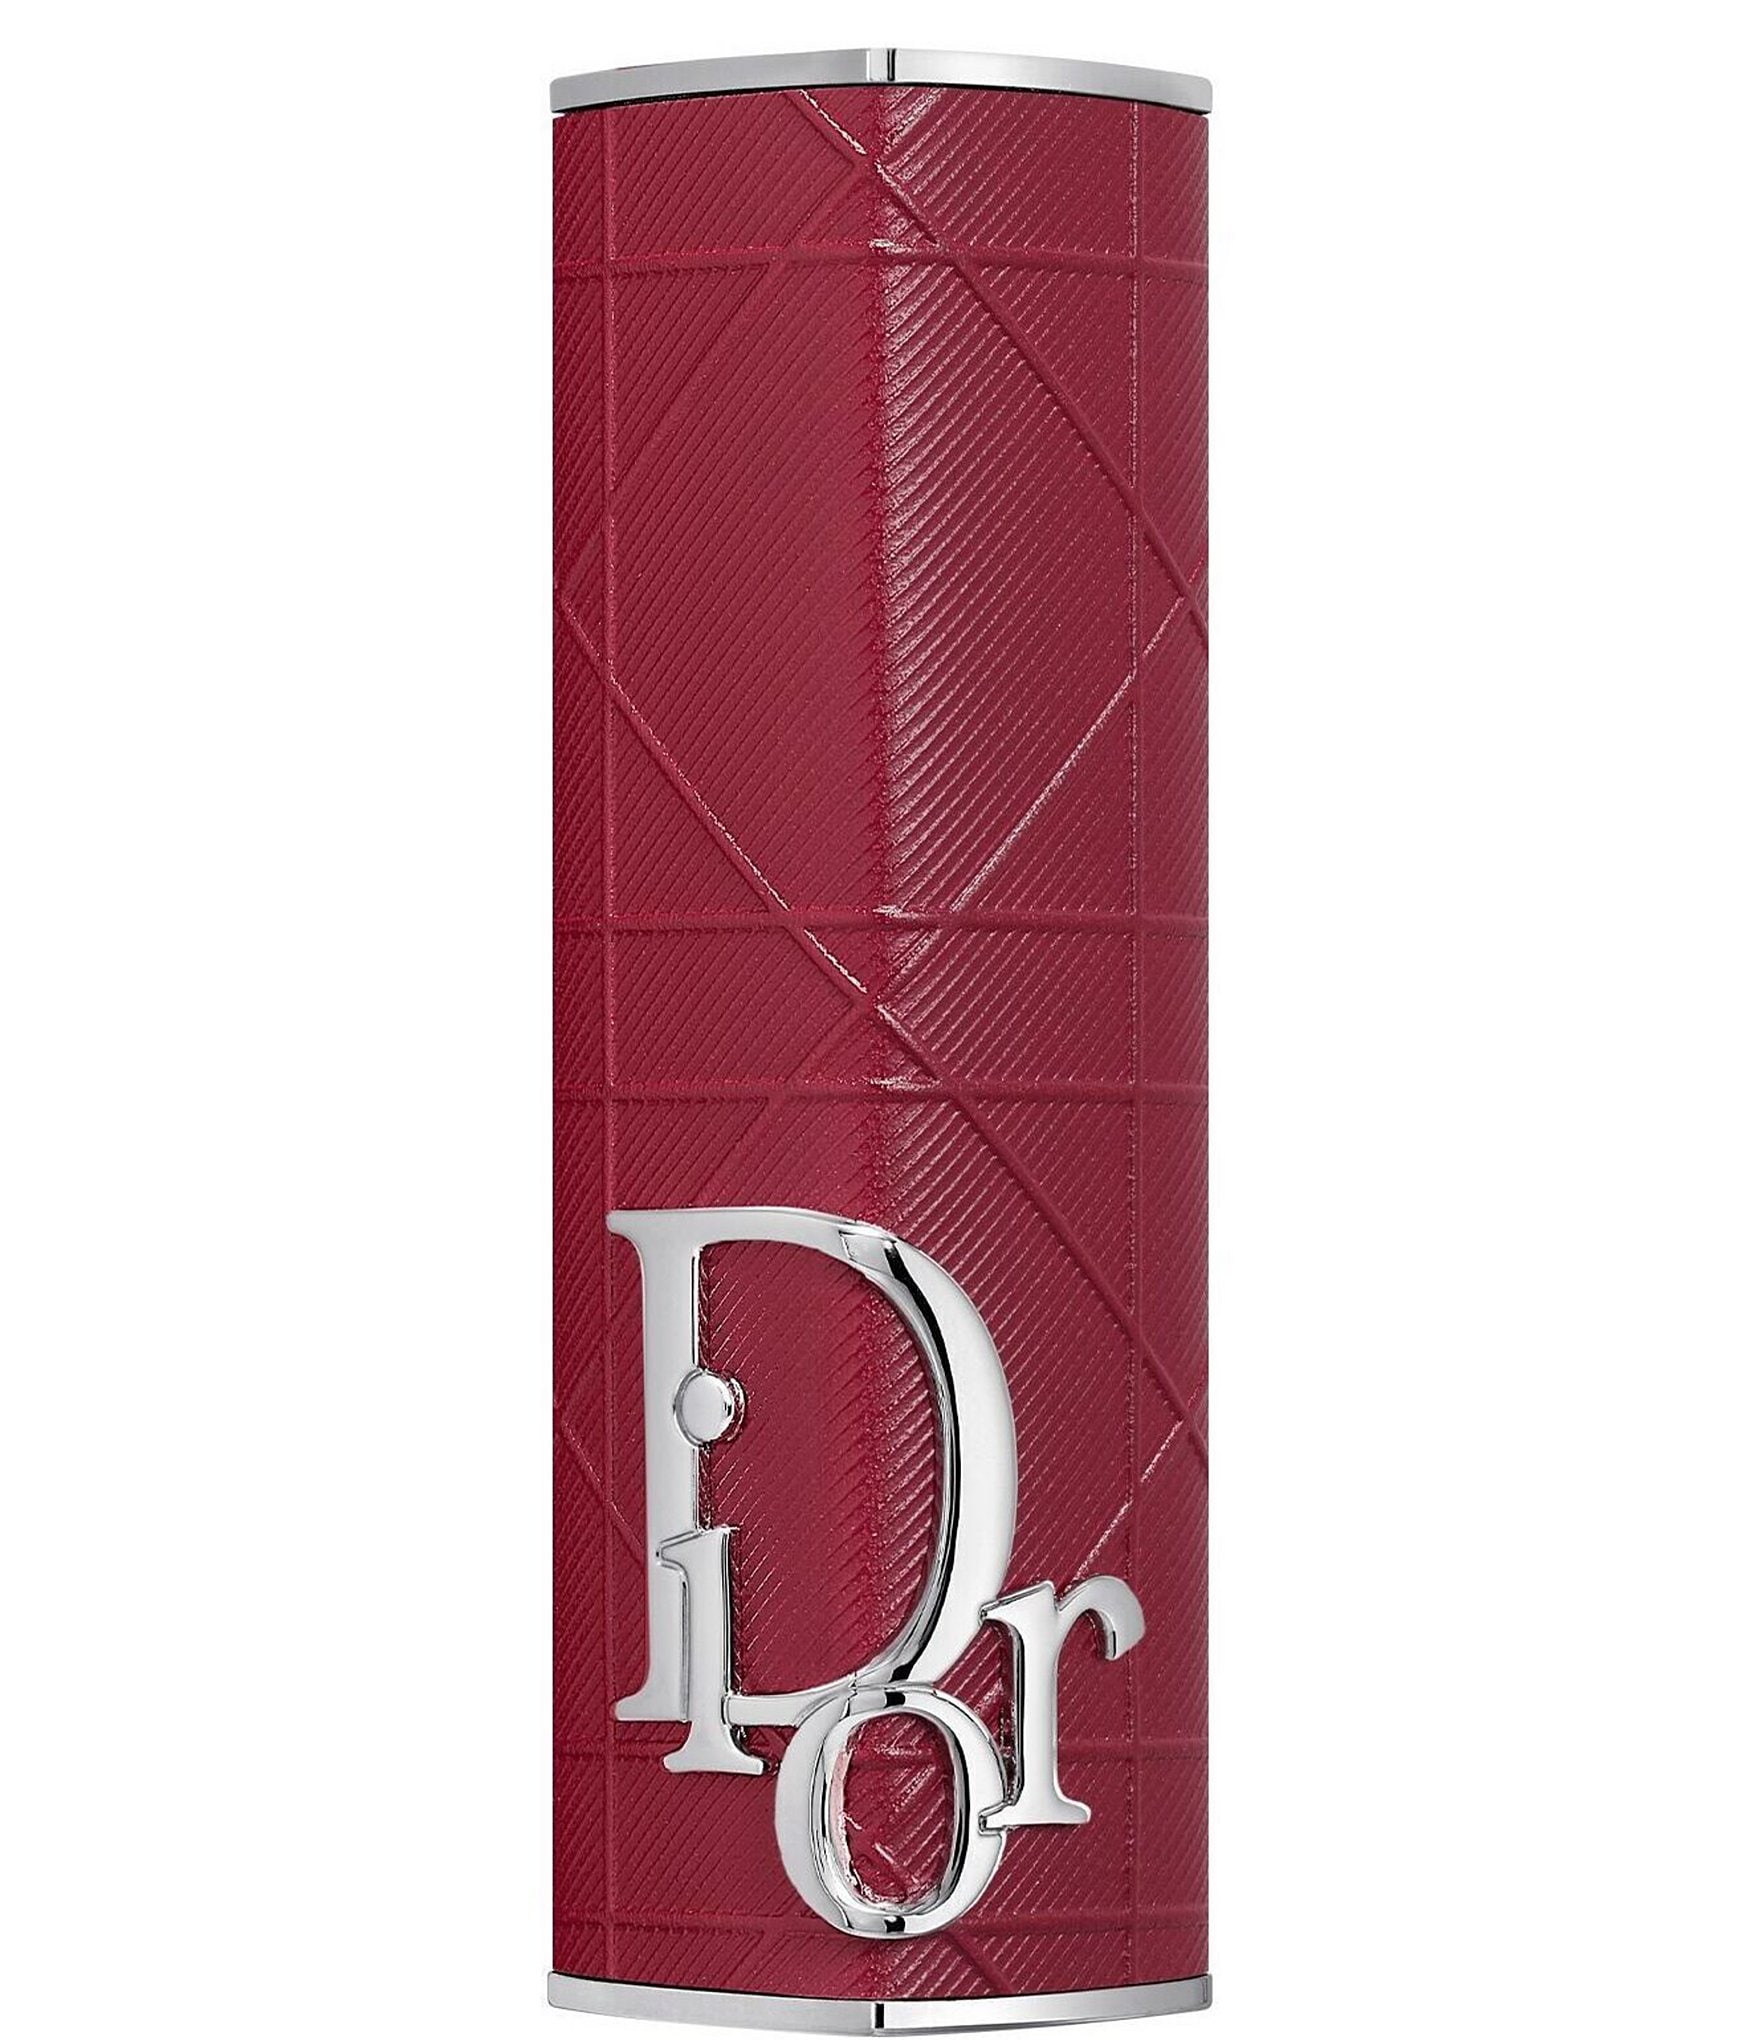 Dior Limited-Edition Dior Addict Couture Lipstick Case | Dillard's